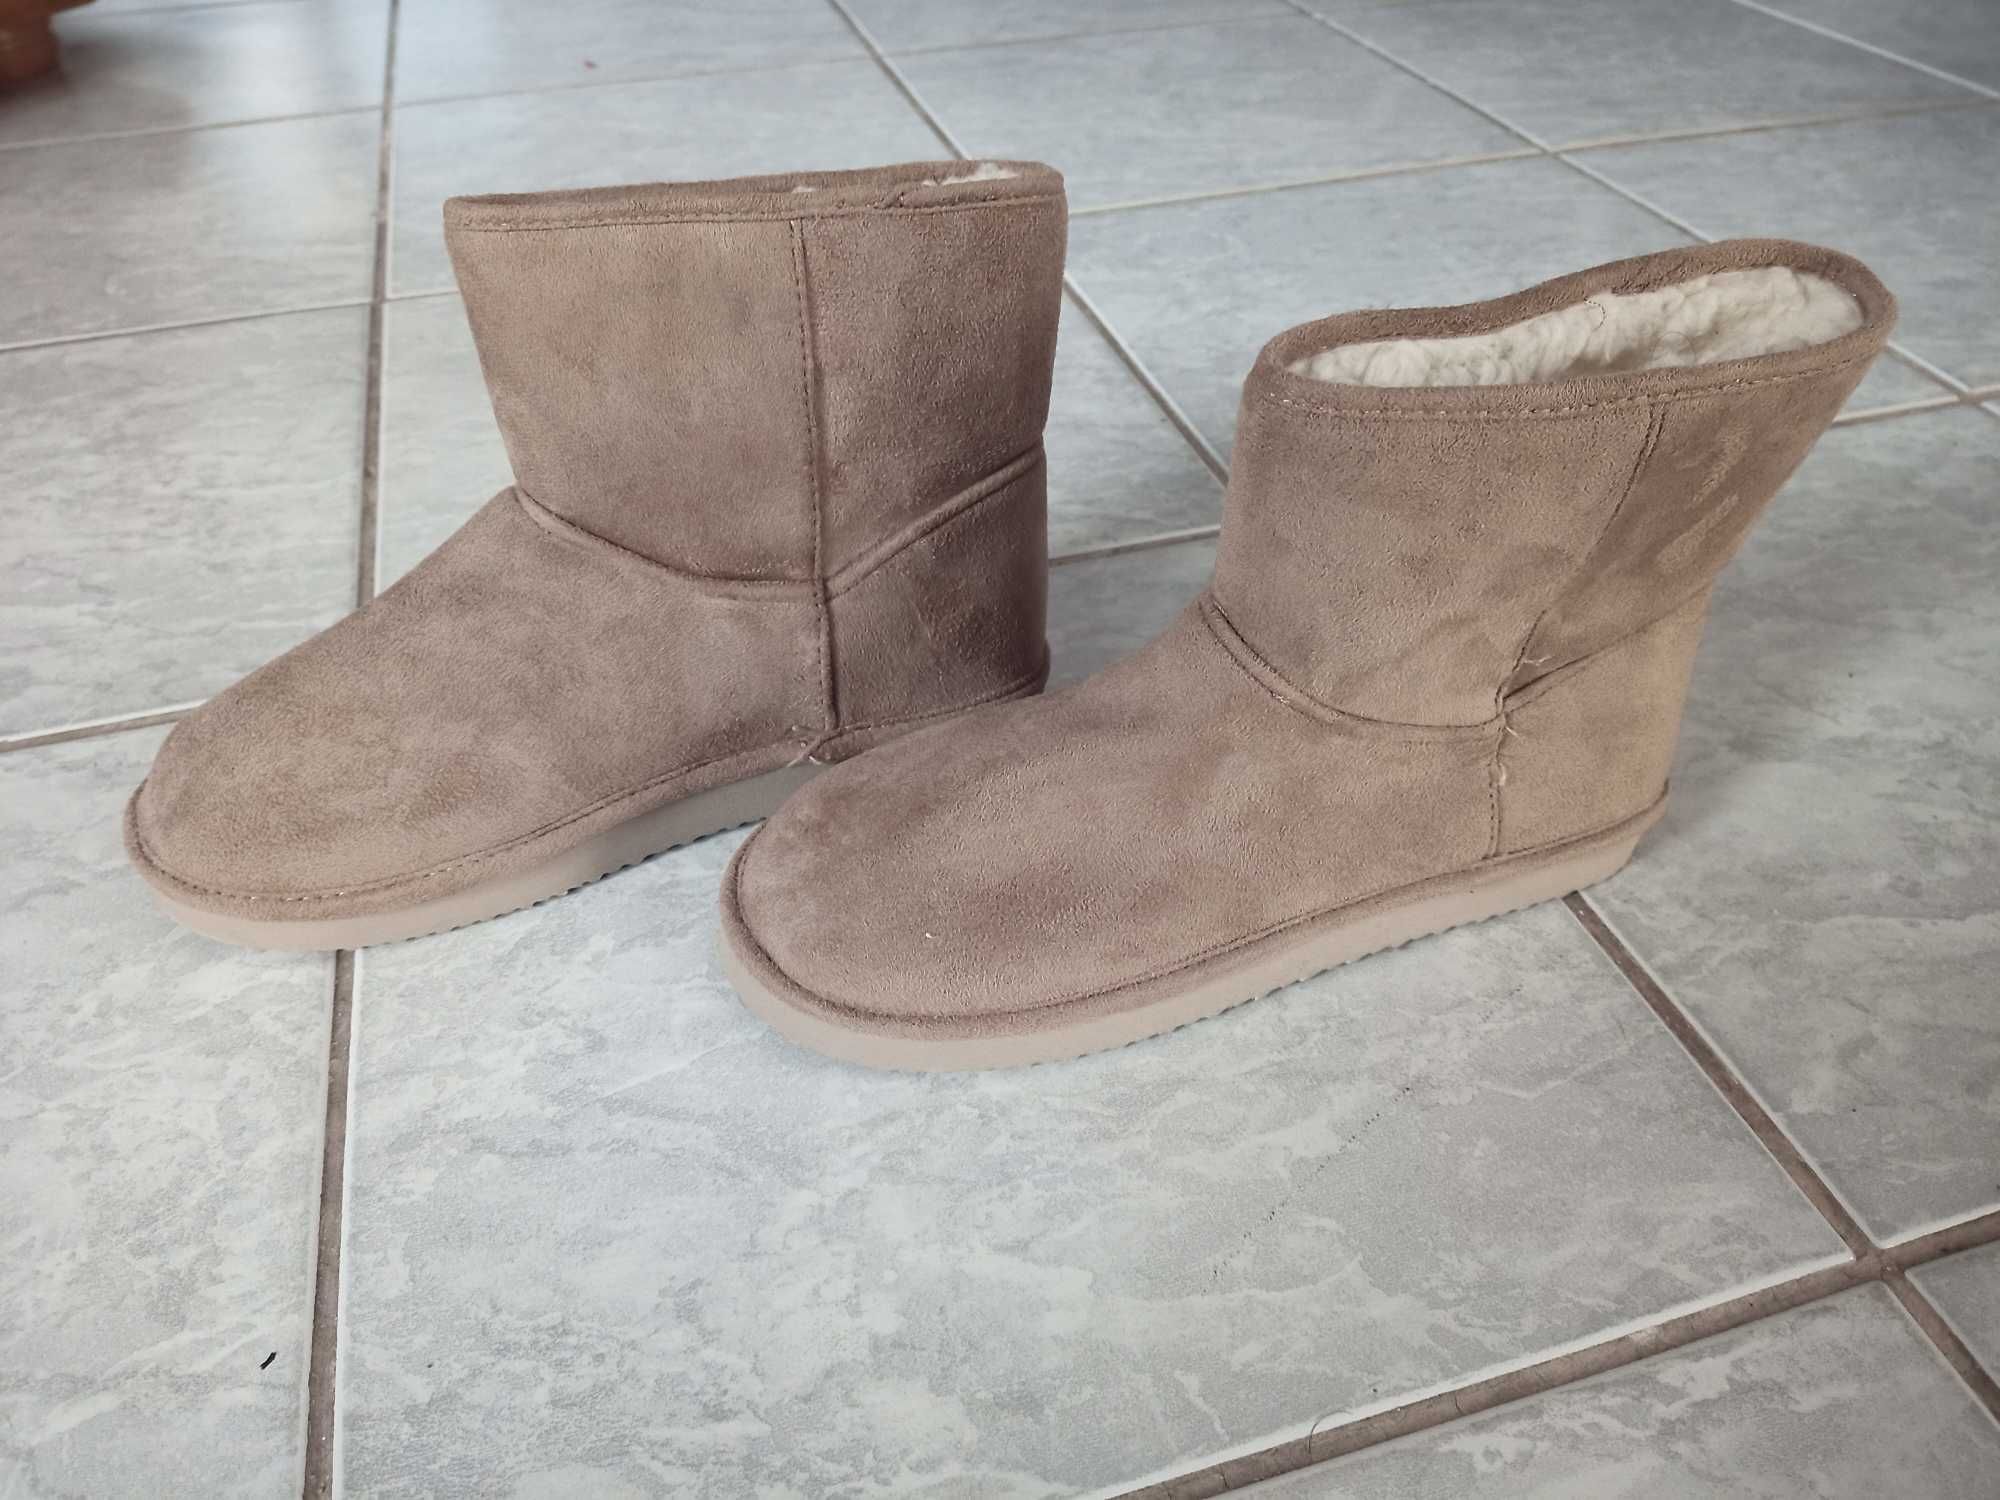 Buty zimowe ocieplane botki H&M, beżowe, nieużywane, 39